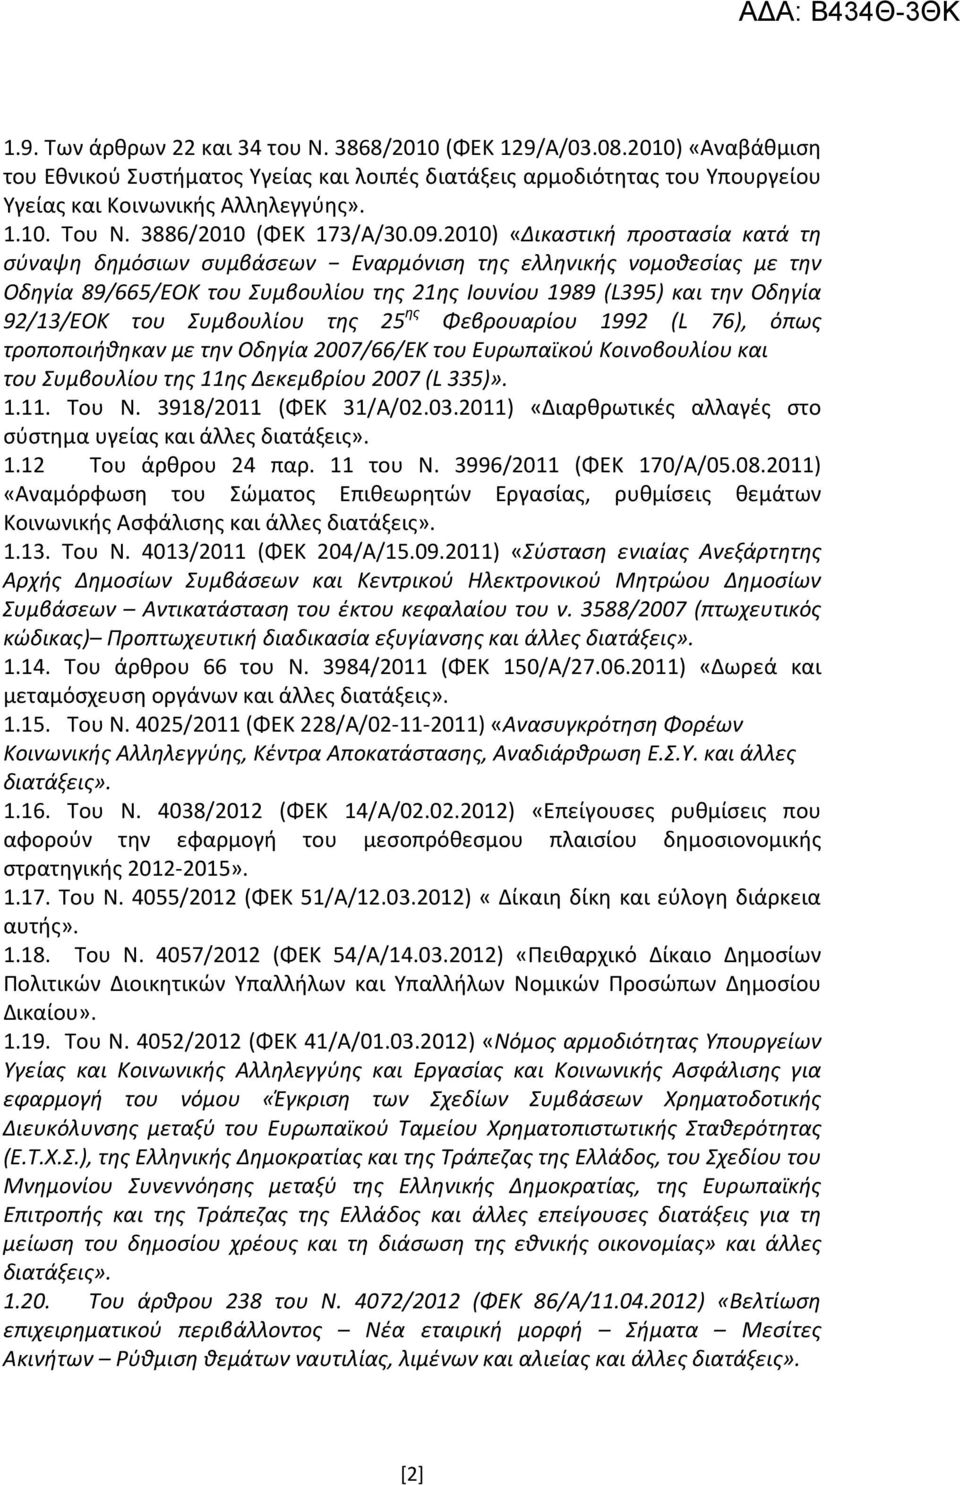 2010) «Δικαστική προστασία κατά τη σύναψη δημόσιων συμβάσεων Εναρμόνιση της ελληνικής νομοθεσίας με την Οδηγία 89/665/ΕΟΚ του Συμβουλίου της 21ης Ιουνίου 1989 (L395) και την Οδηγία 92/13/ΕΟΚ του